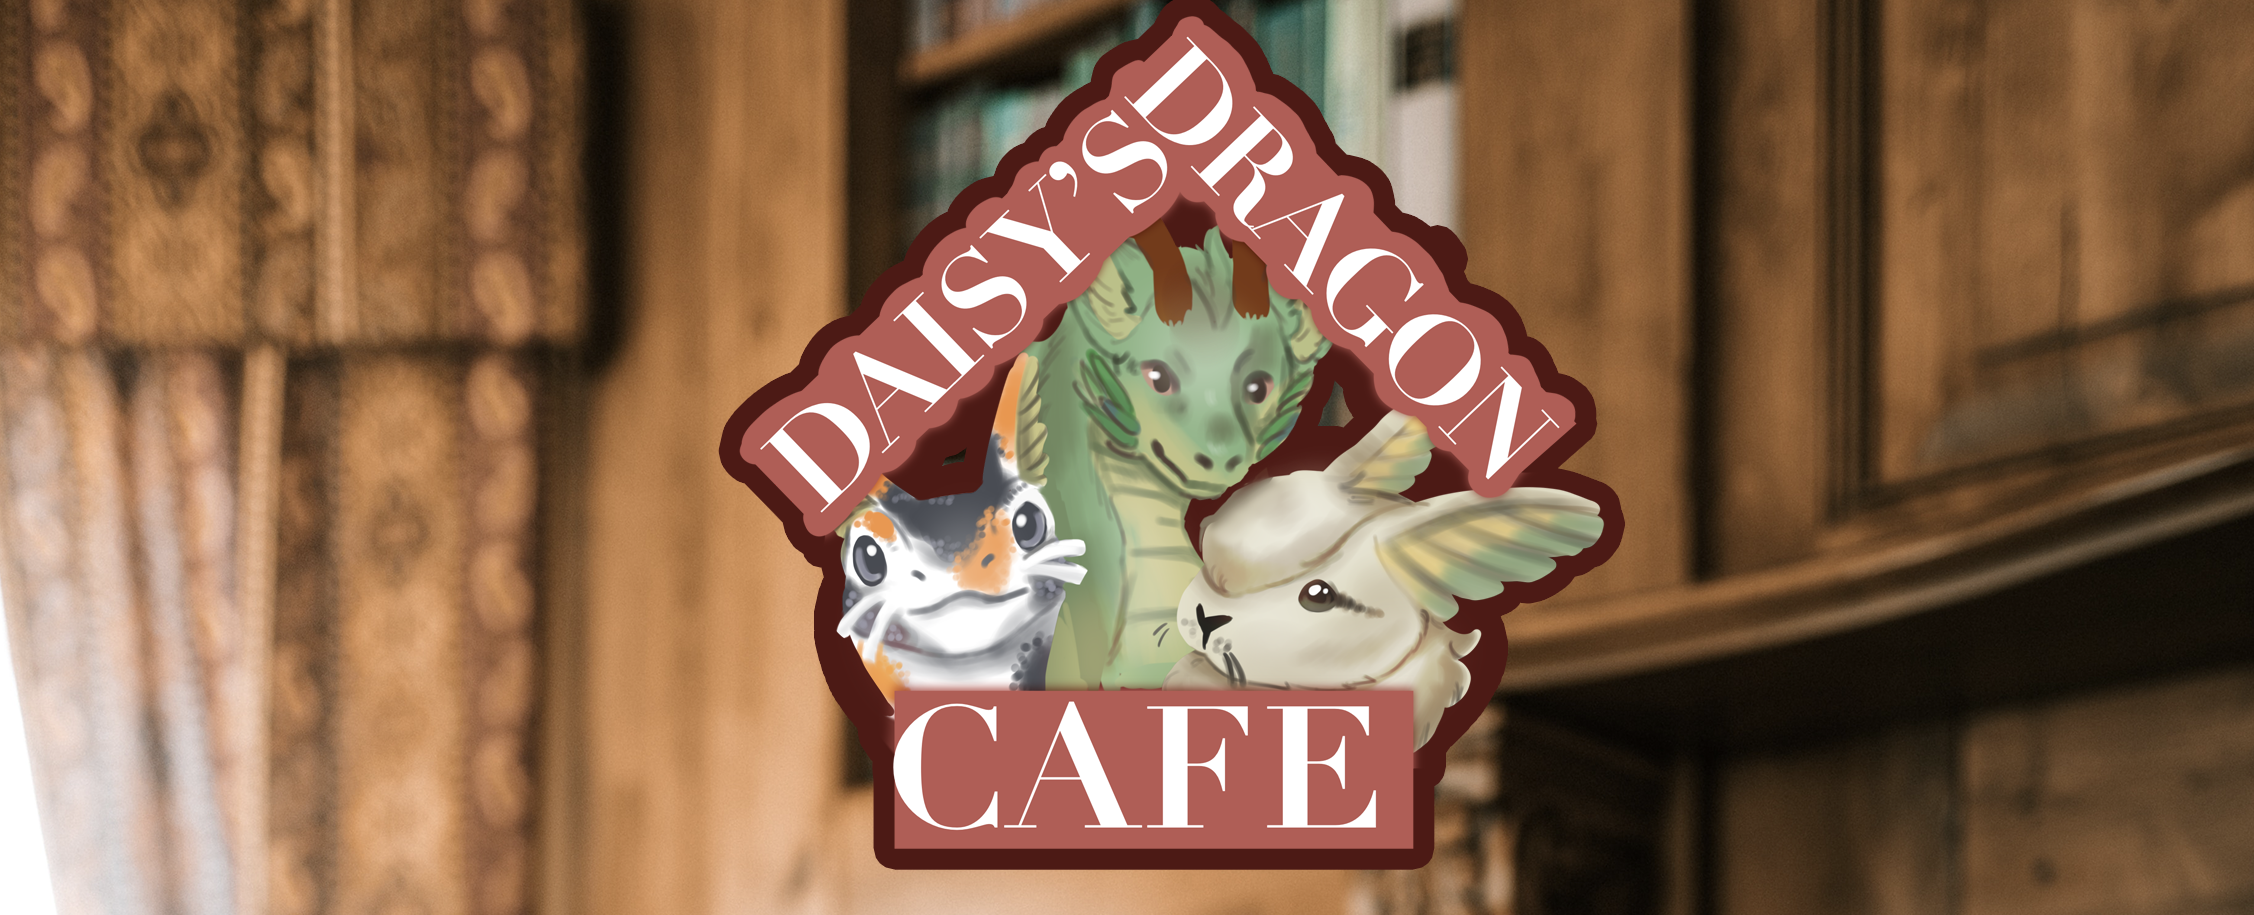 Daisy's Dragon Cafe